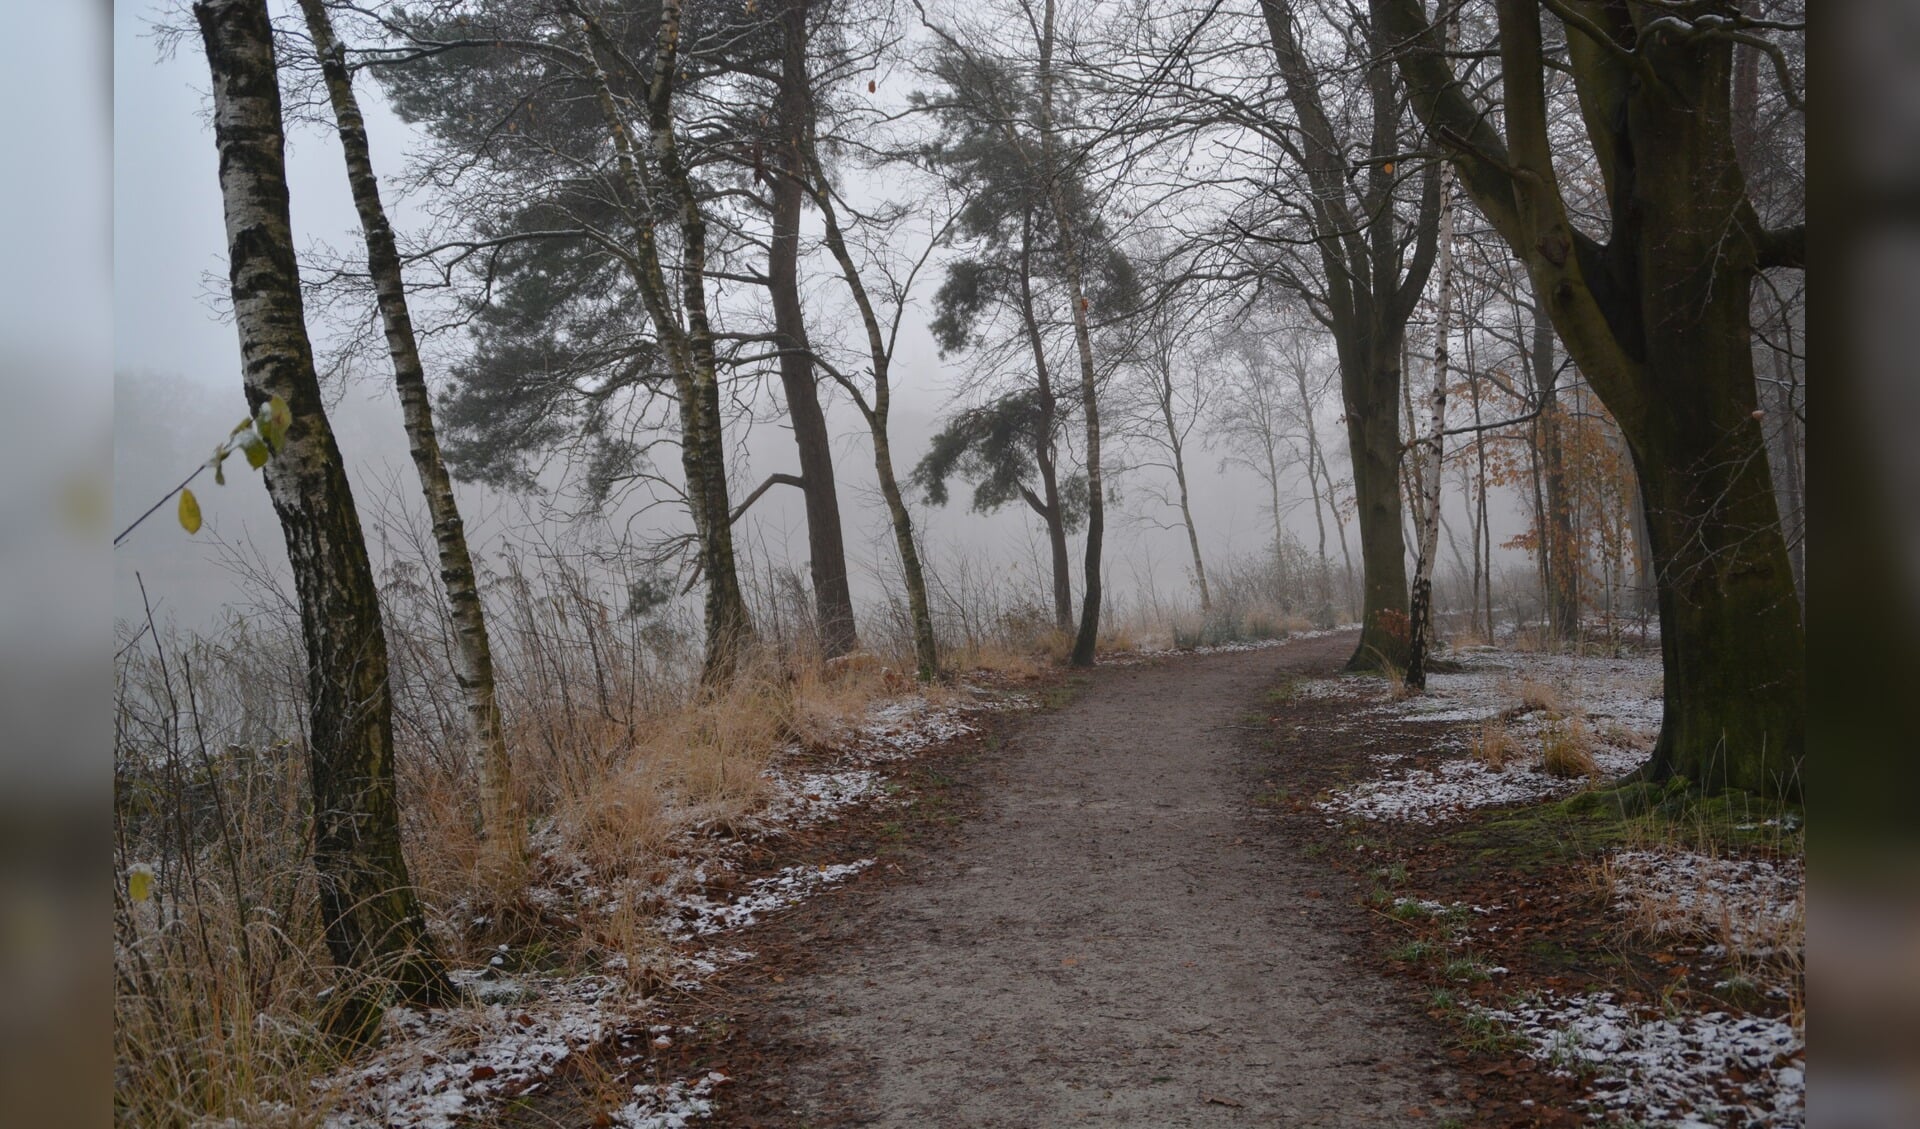 Winterse aanblik rond de bosvijver in de Vegenlinbossen.